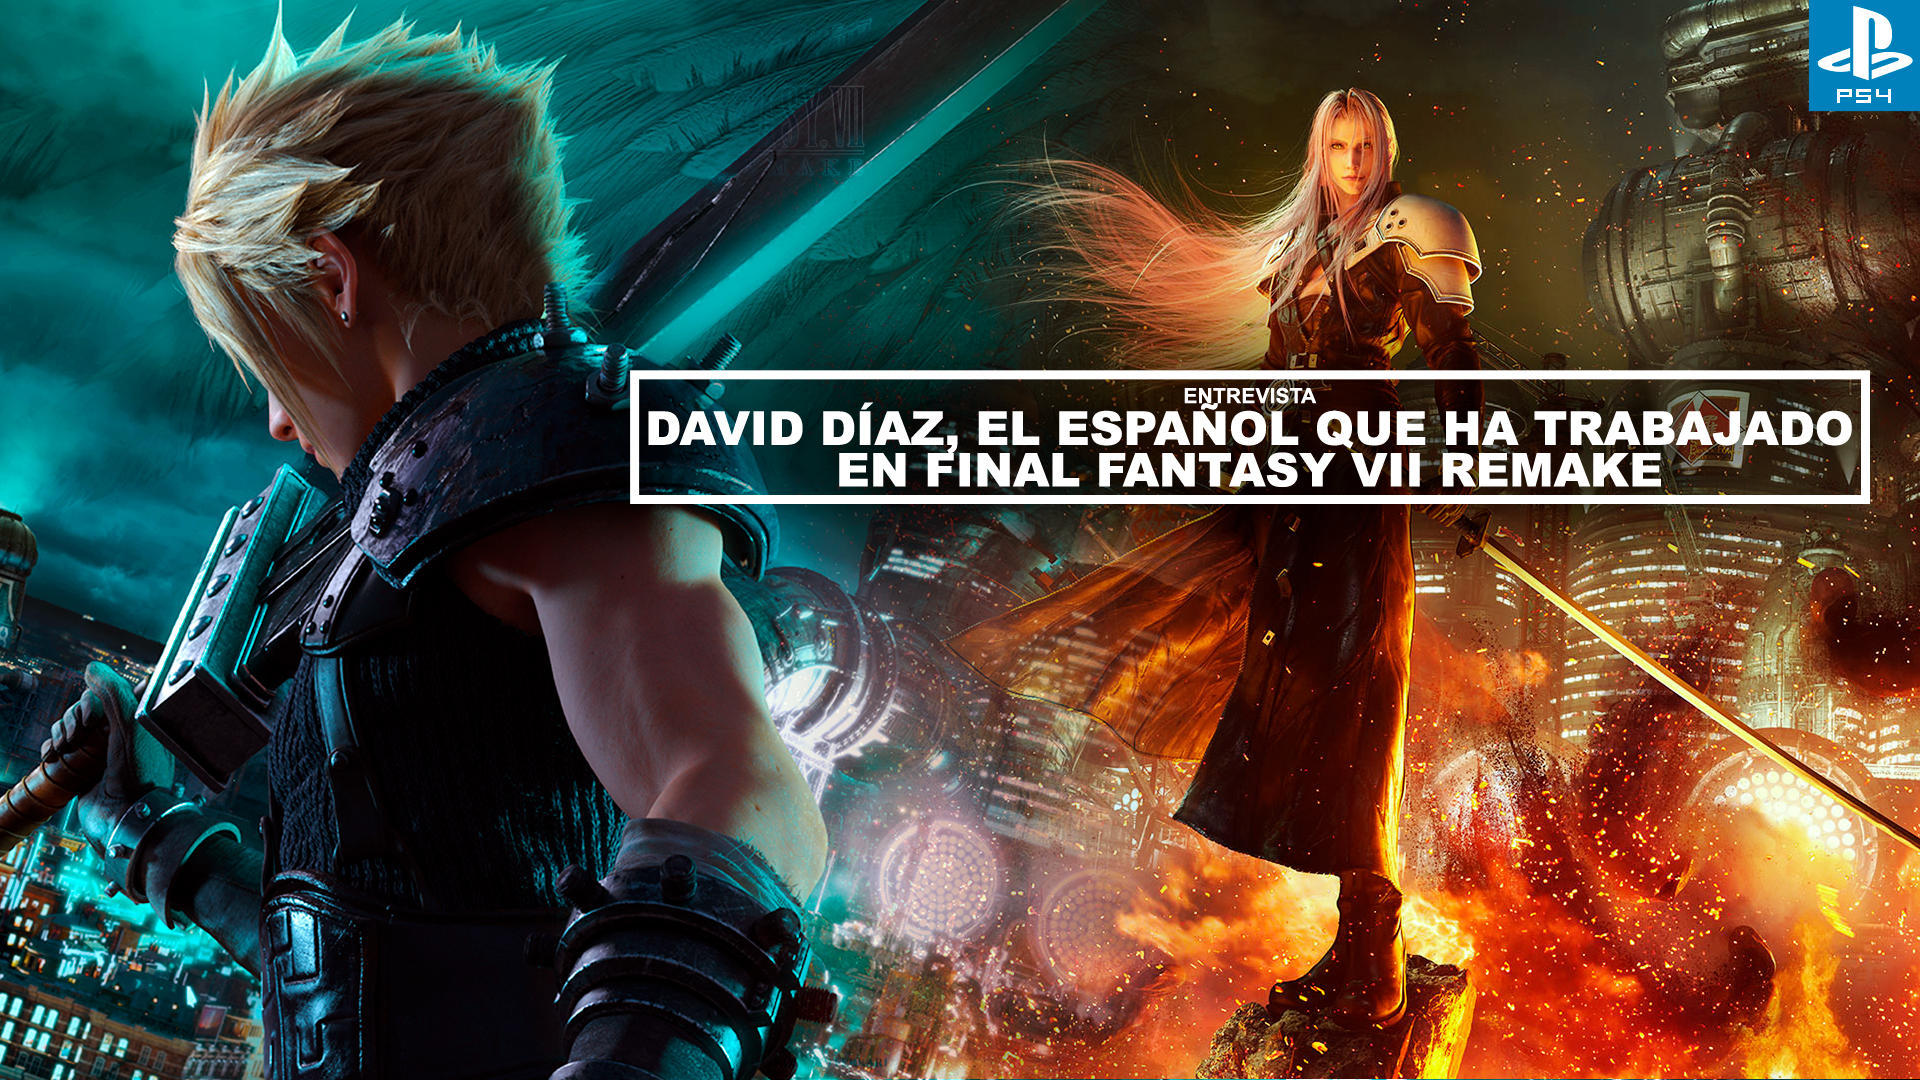 Entrevista David Daz, el espaol que ha trabajado en Final Fantasy 7 Remake